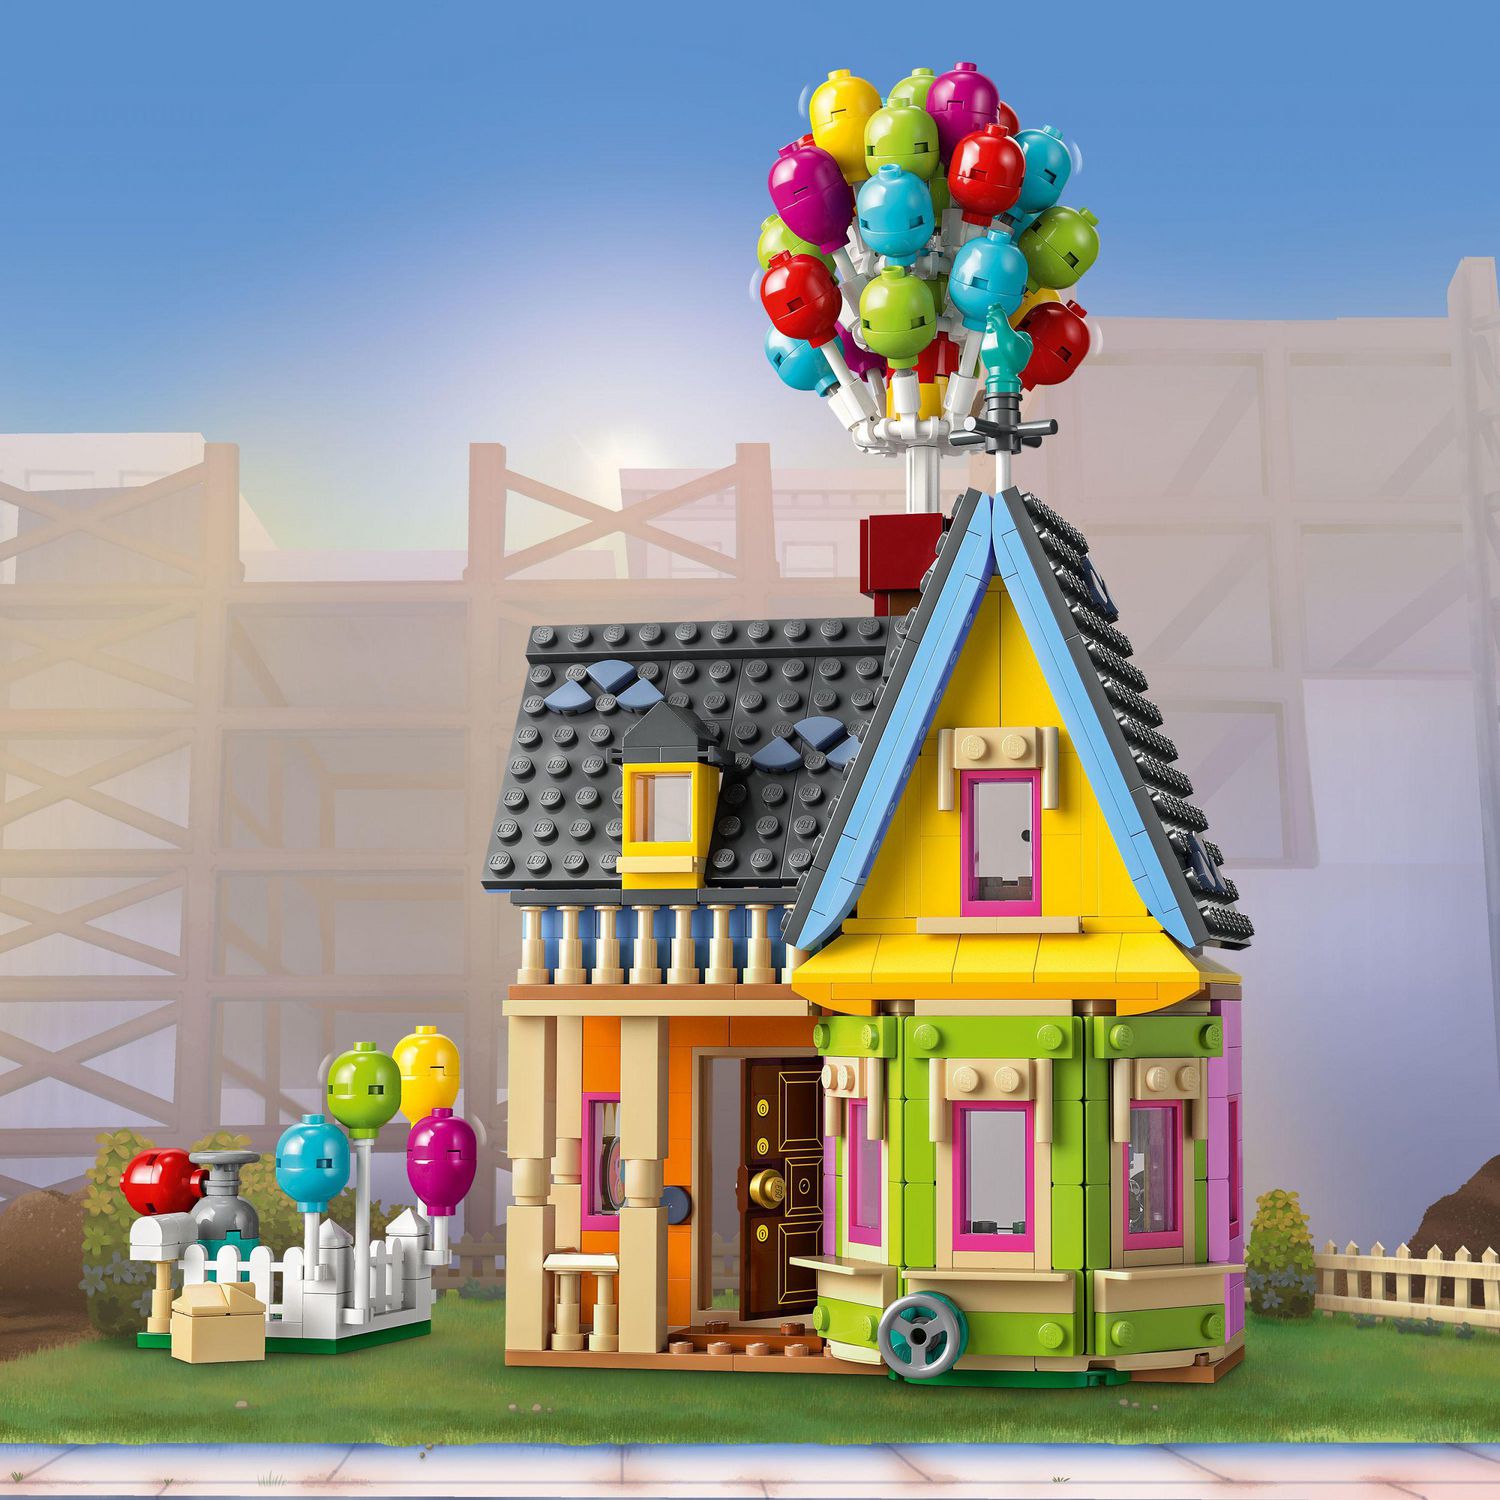 LEGO Disney Classic La maison de « Là-haut » 43217 Ensemble de construction  (598 pièces) Comprend 598 pièces, 9+ ans 